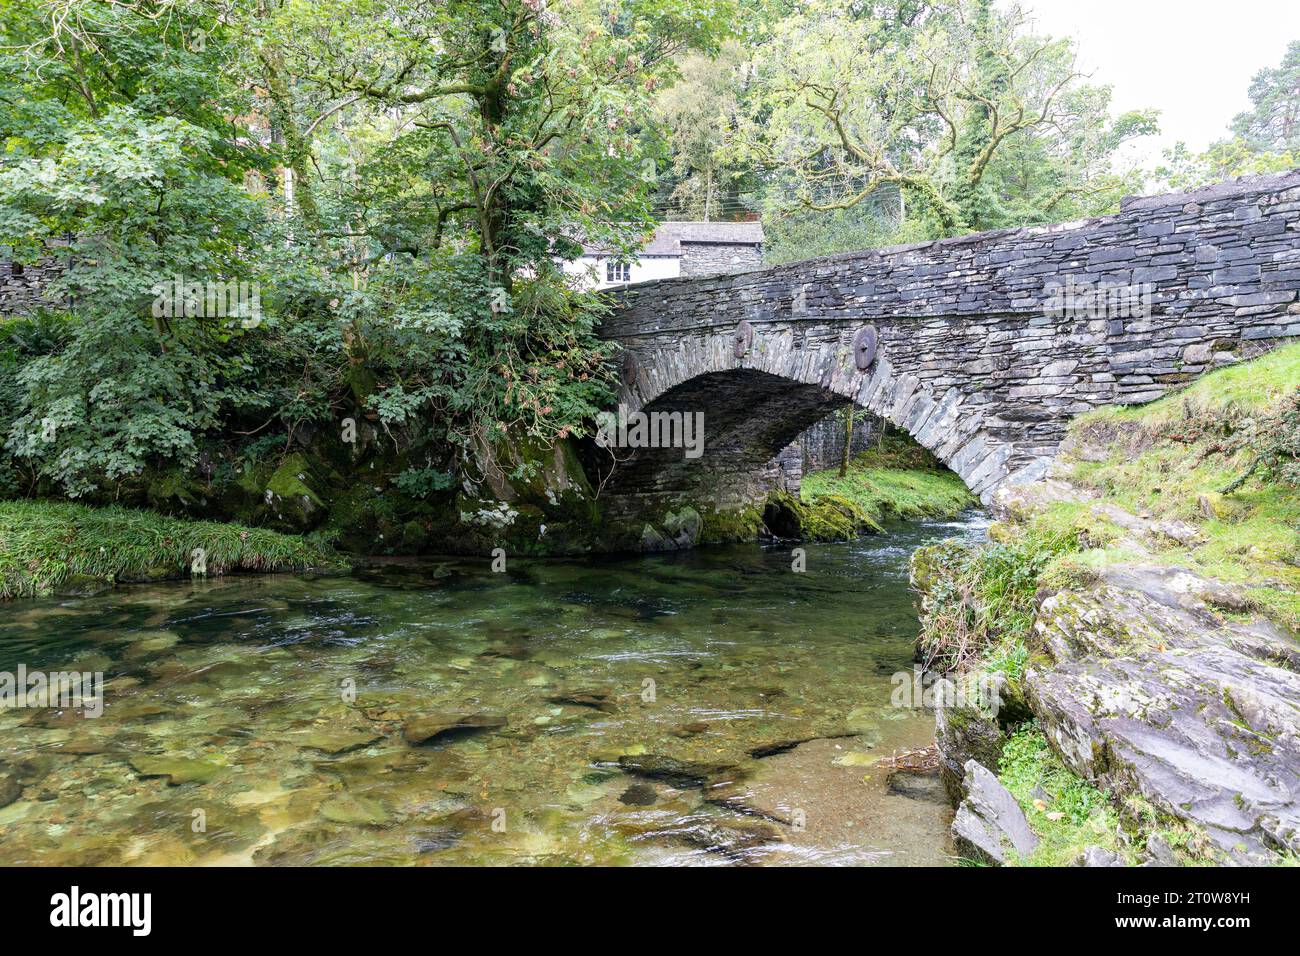 Village Elterwater et pont dans le Lake District, la rivière Brathay coule sous ce pont classé Grade 2 du 18e siècle, Cumbria, Angleterre, Royaume-Uni Banque D'Images